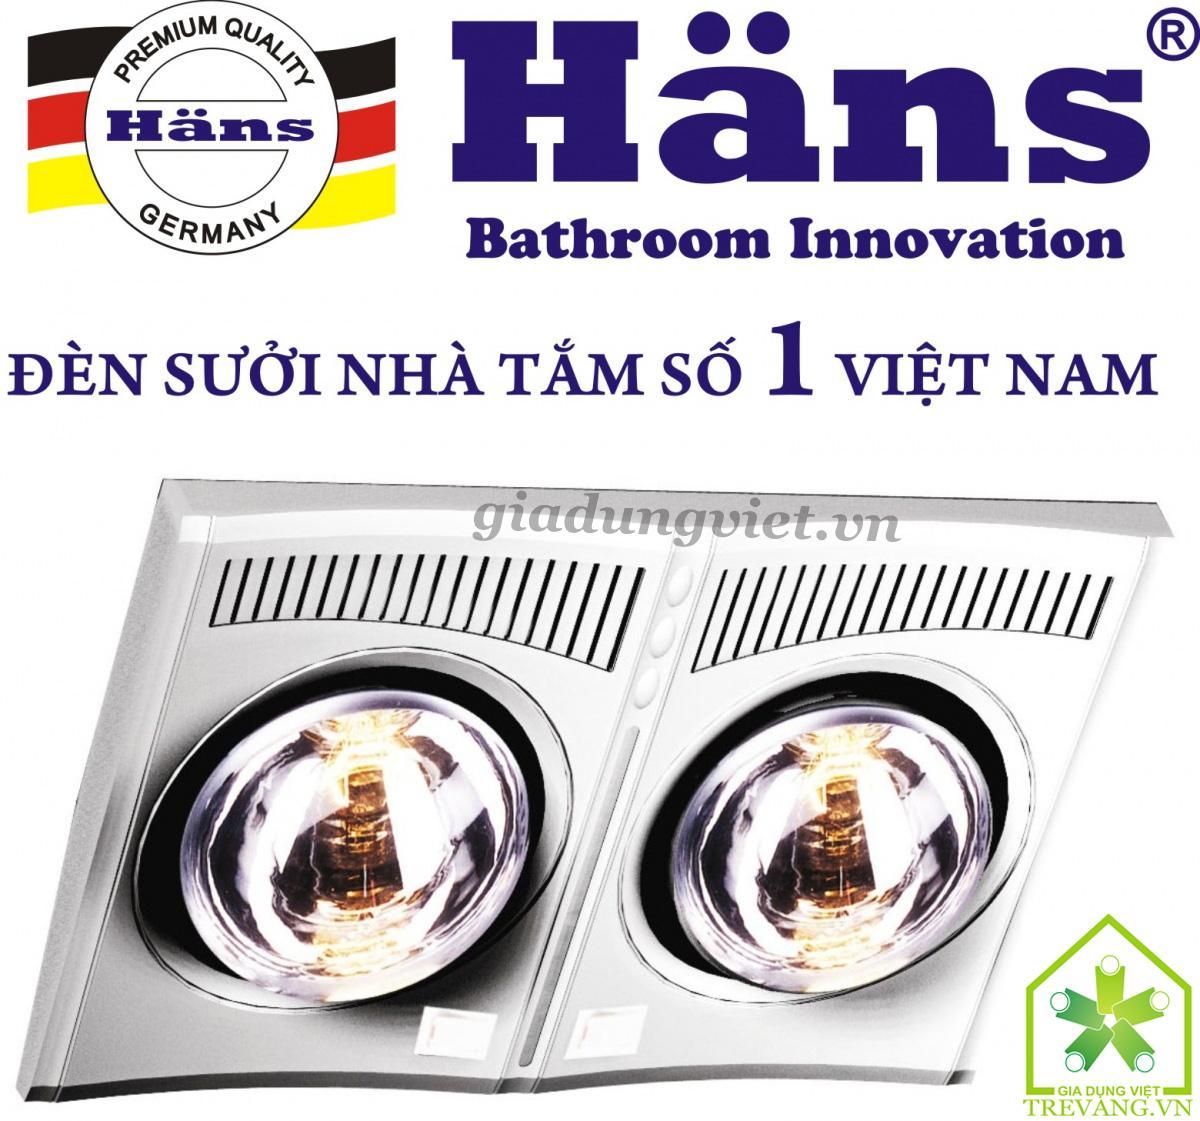 Đèn sưởi nhà tắm Hans H2B610 hồng ngoại 2 bóng vàng